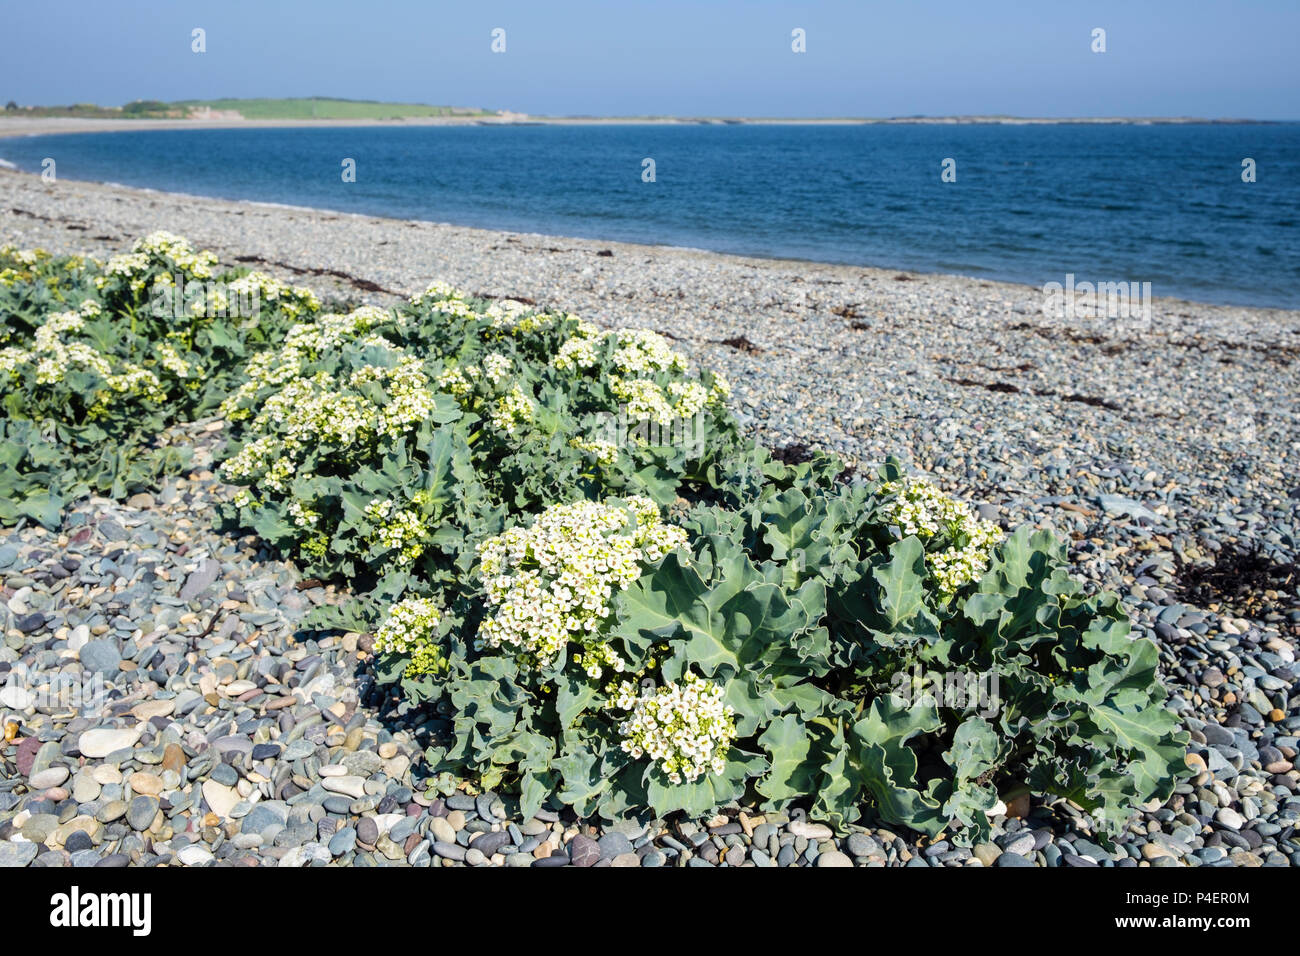 Kale Crambe maritima (mer) les plantes en fleurs qui poussent à l'état sauvage sur la plage de galets en été. Cemlyn Cemaes Bay, île d'Anglesey, au Pays de Galles, Royaume-Uni, Angleterre Banque D'Images